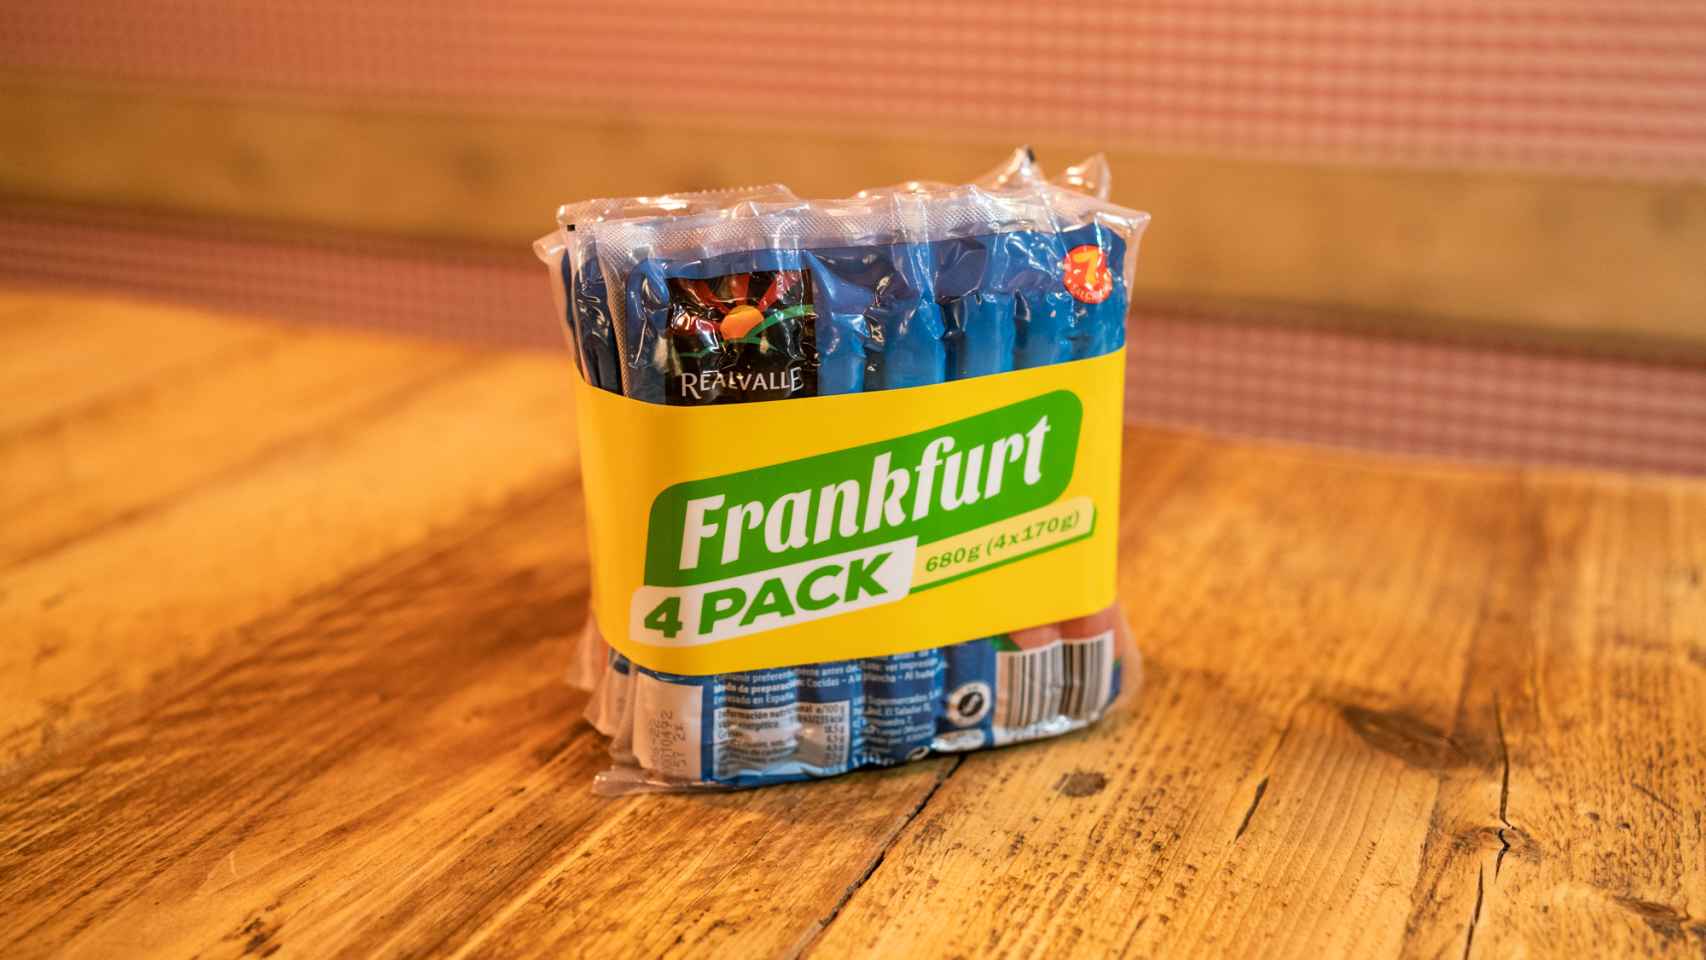 El paquete de salchichas estilo Frankfurt de Real Valle, la marca blanca de Lidl.